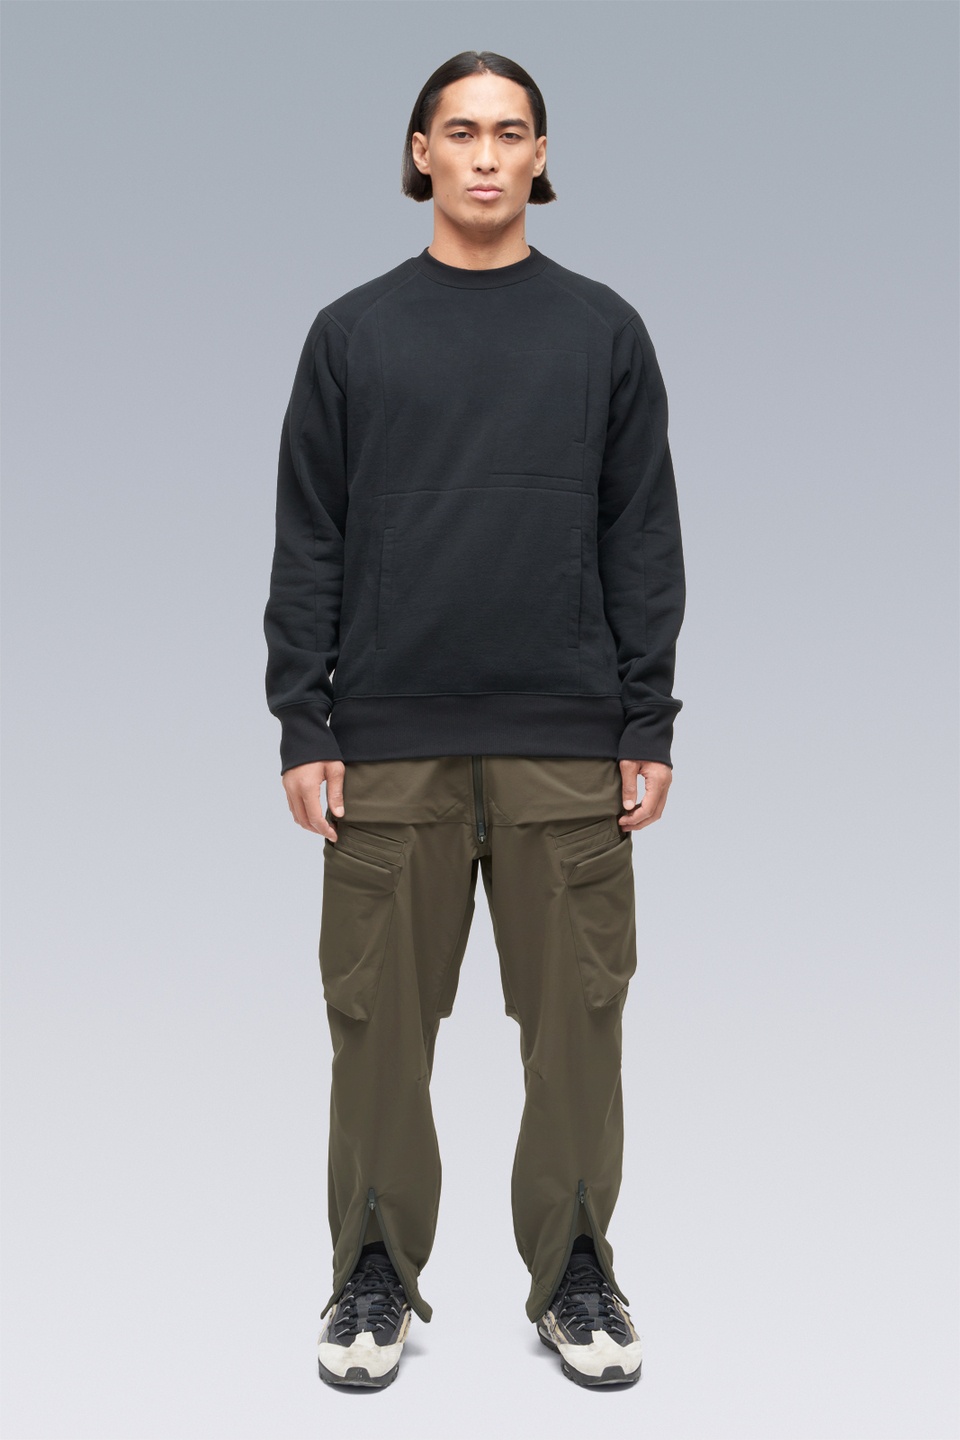 S14-BR Cotton Crewneck Sweatshirt Black - 1